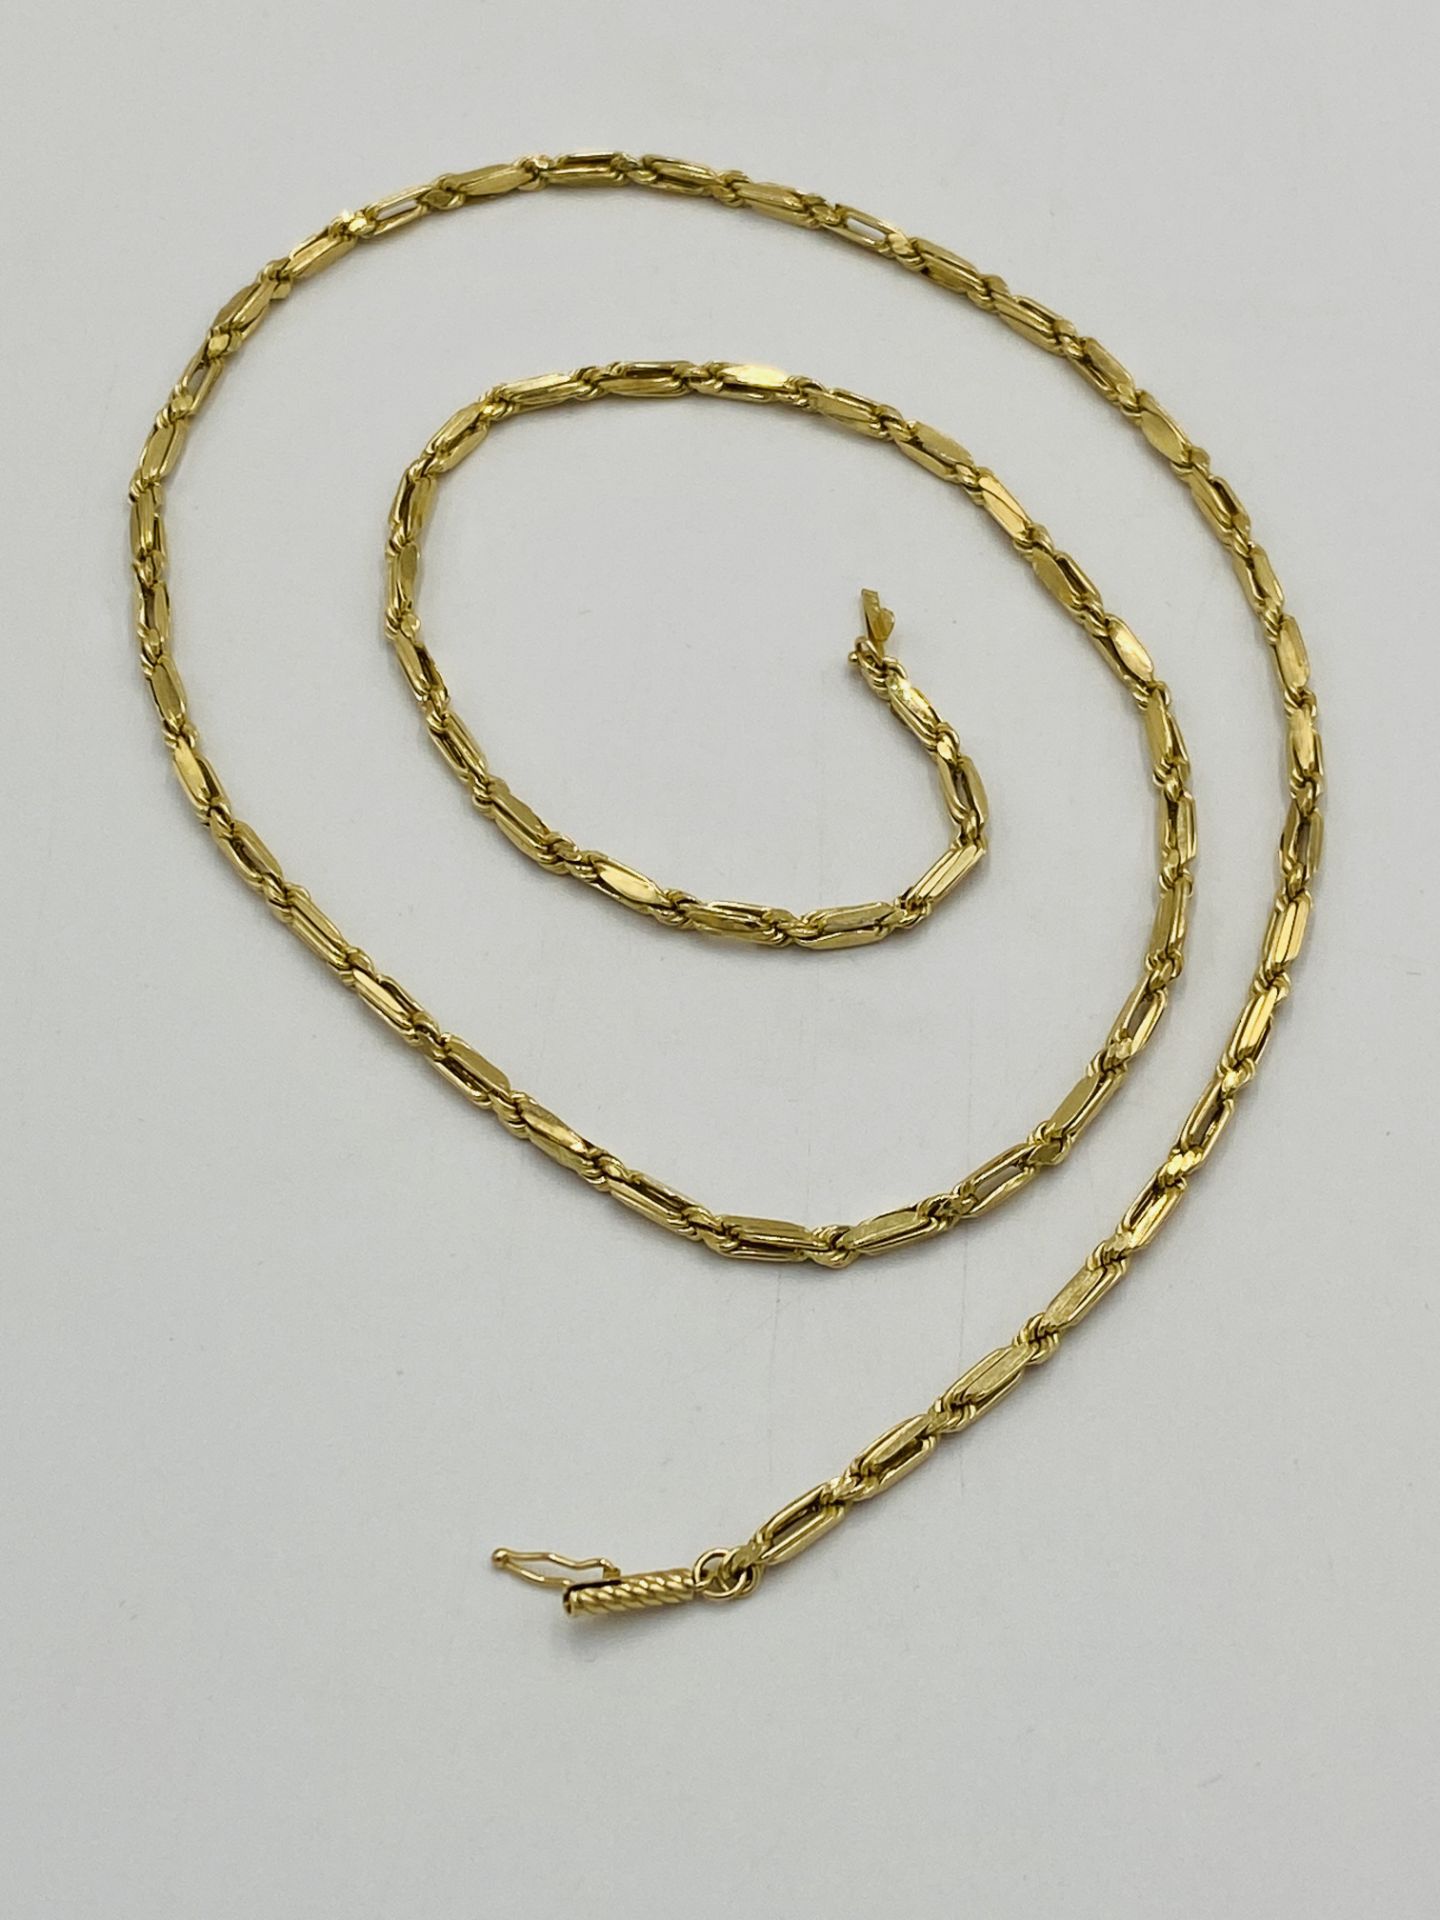 14ct gold bracelet - Image 3 of 5